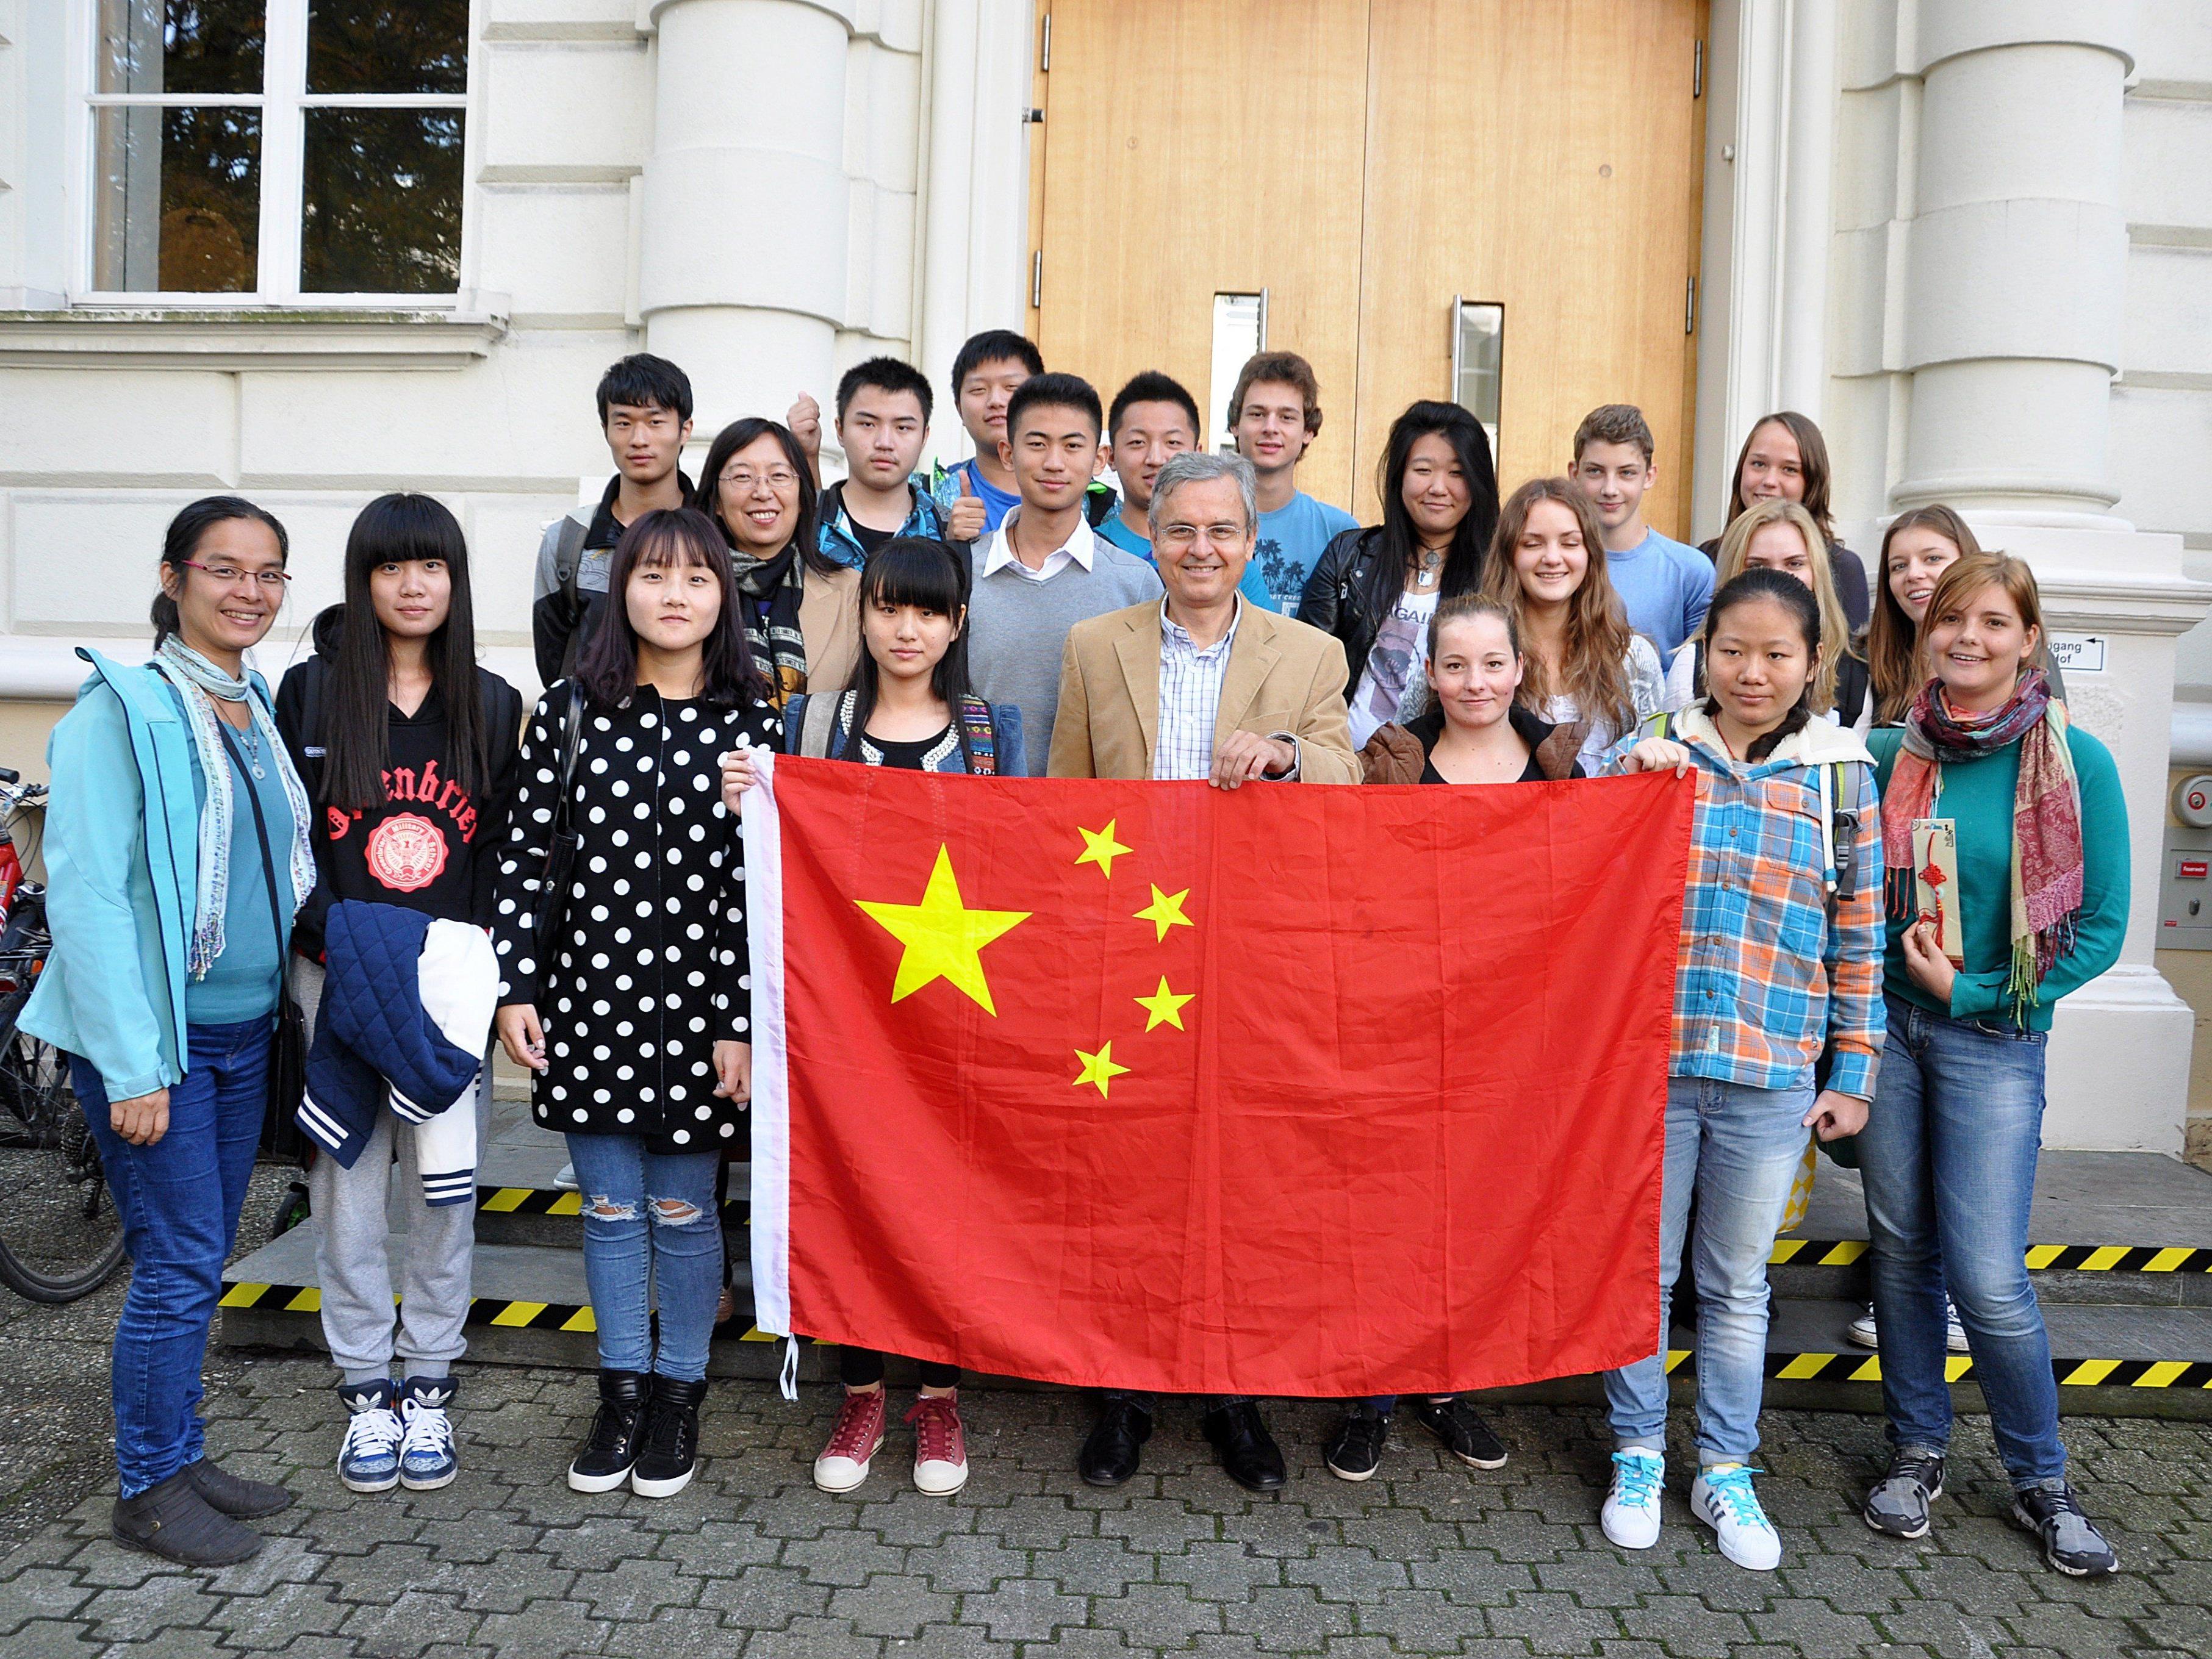 Trotz sprachlicher und kultureller Differenzen, verstanden sich die chinesischen und österreichischen Schüler auf Anhieb.